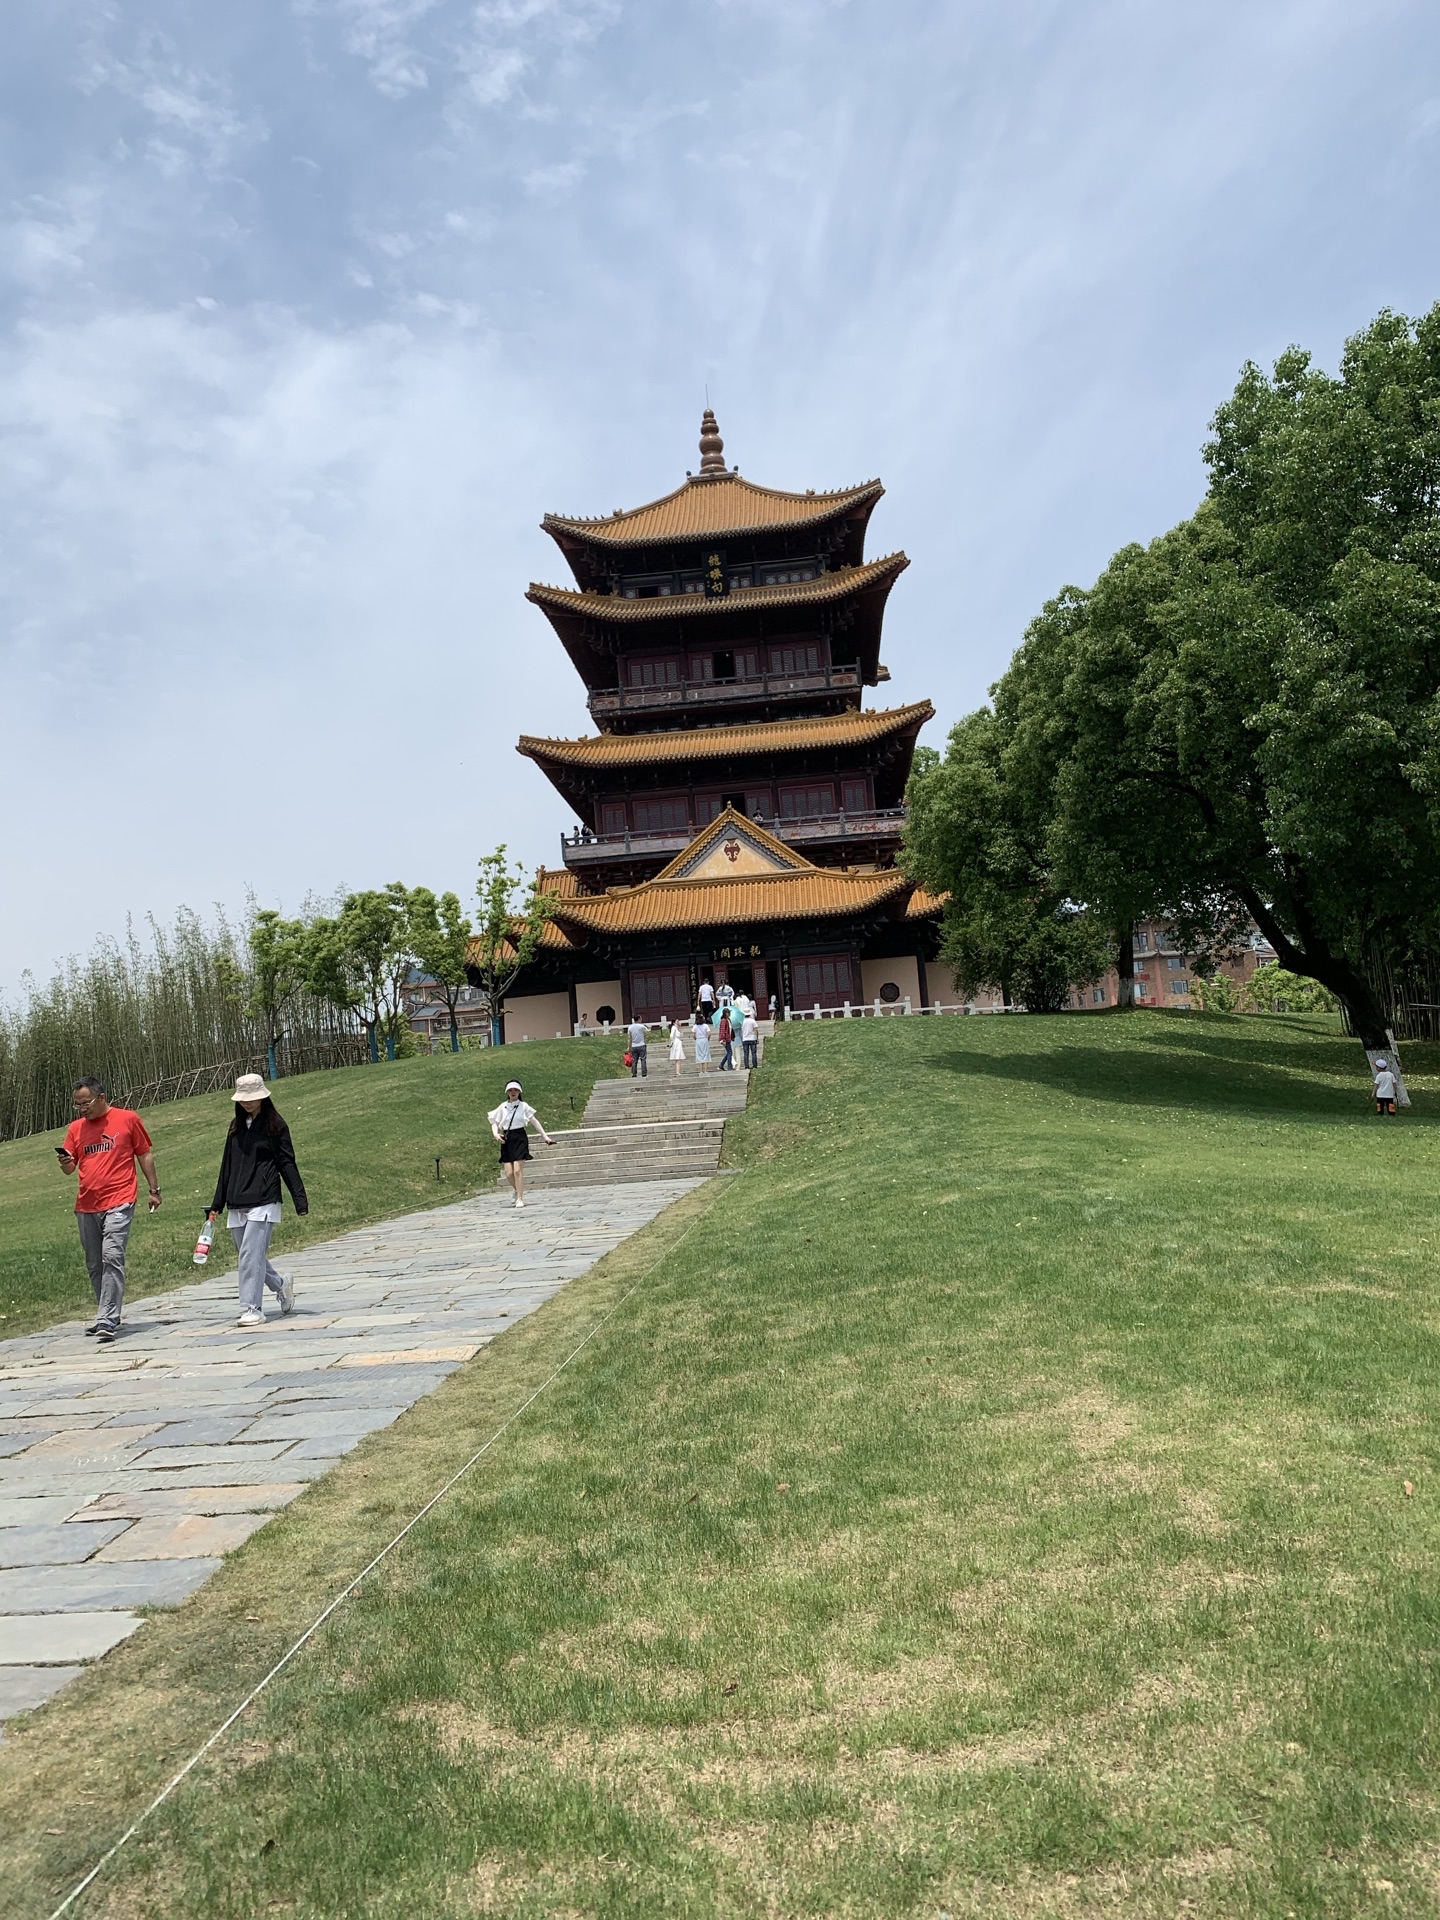 龙珠阁,位于江西省景德镇市御窑厂国家考古遗址公园内